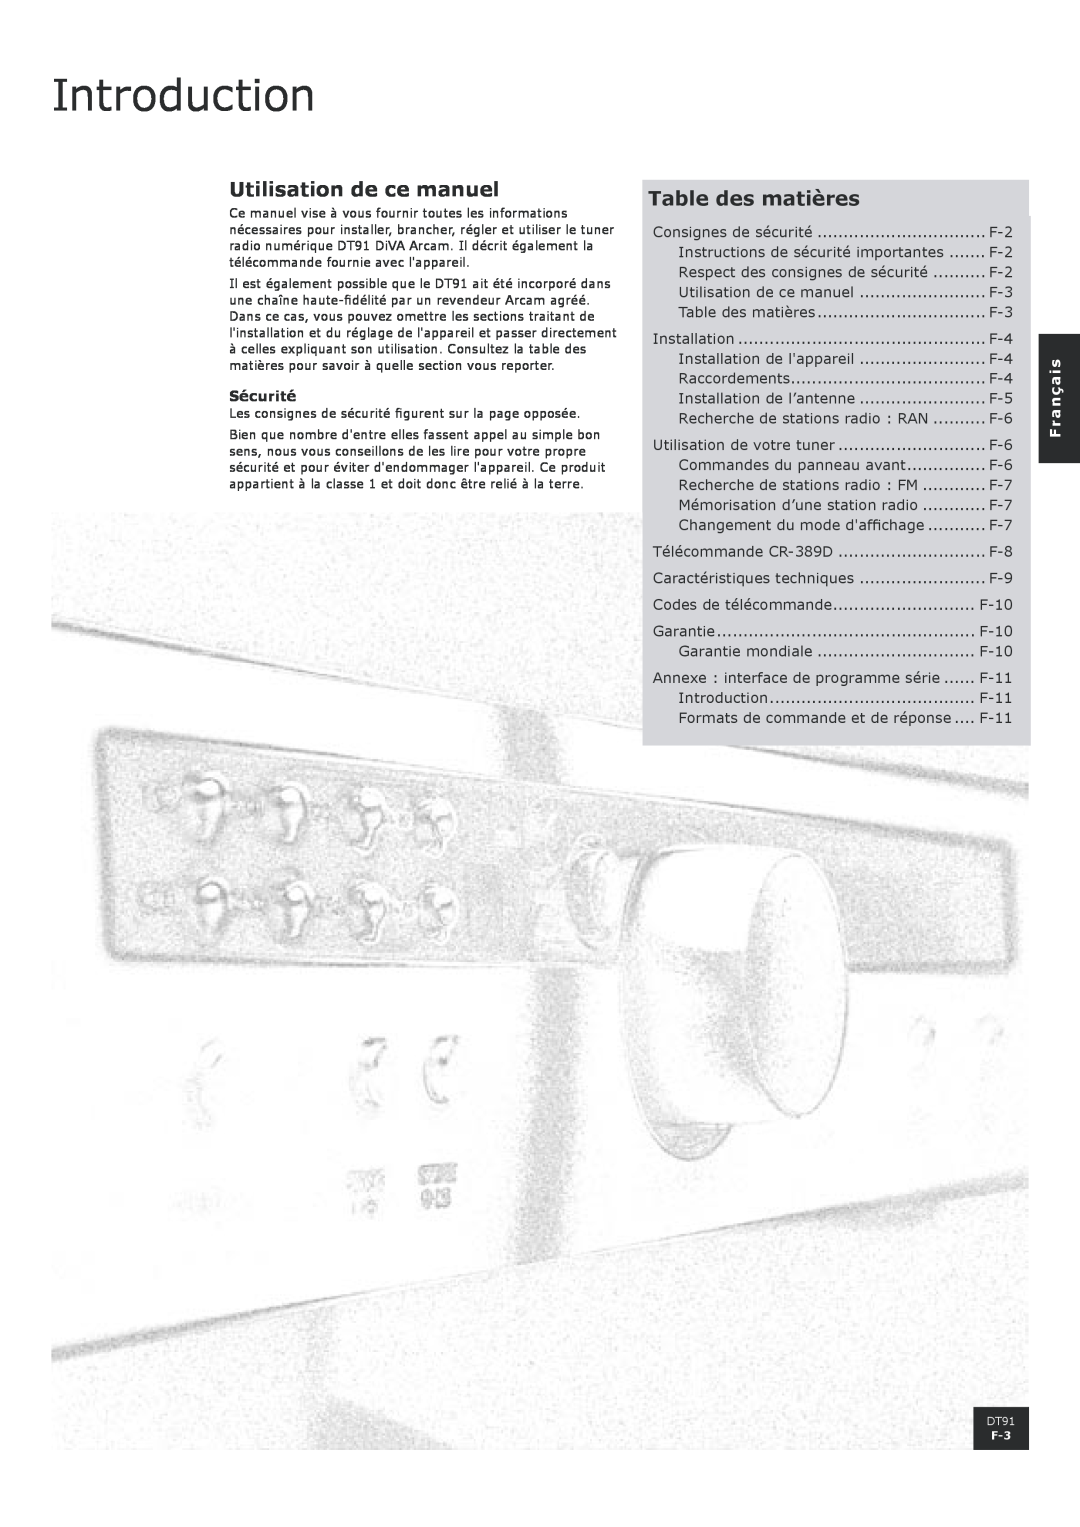 Arcam DT91 manual Introduction, Utilisation de ce manuel, Table des matières, Sécurité, Français 